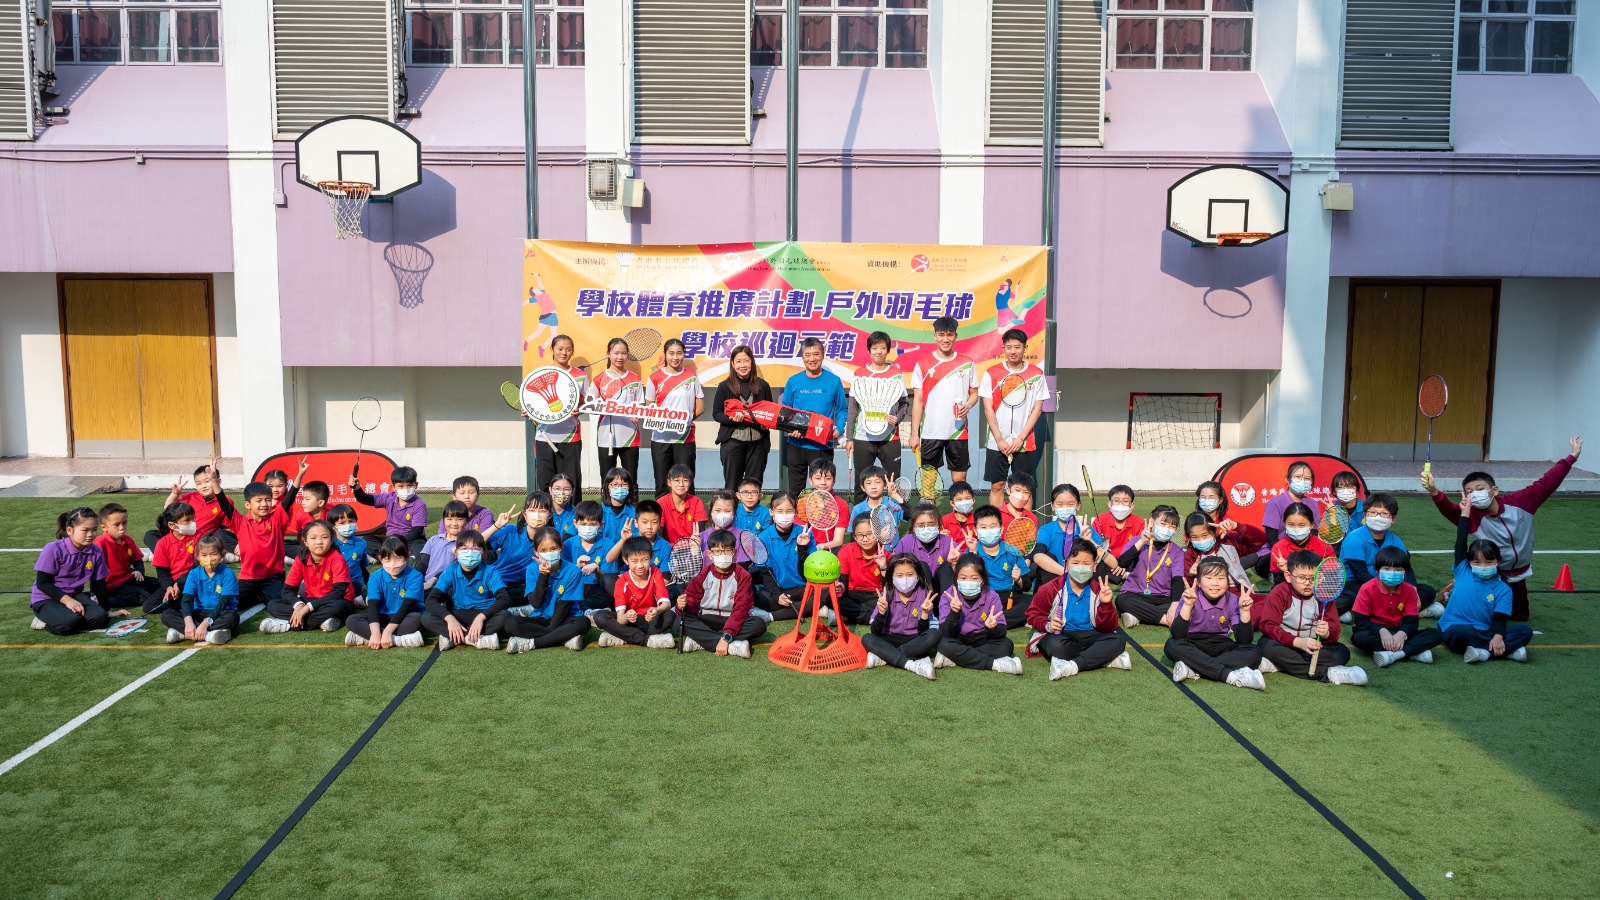 香港羽毛球總會向參與學校贈送戶外羽毛球基本裝備